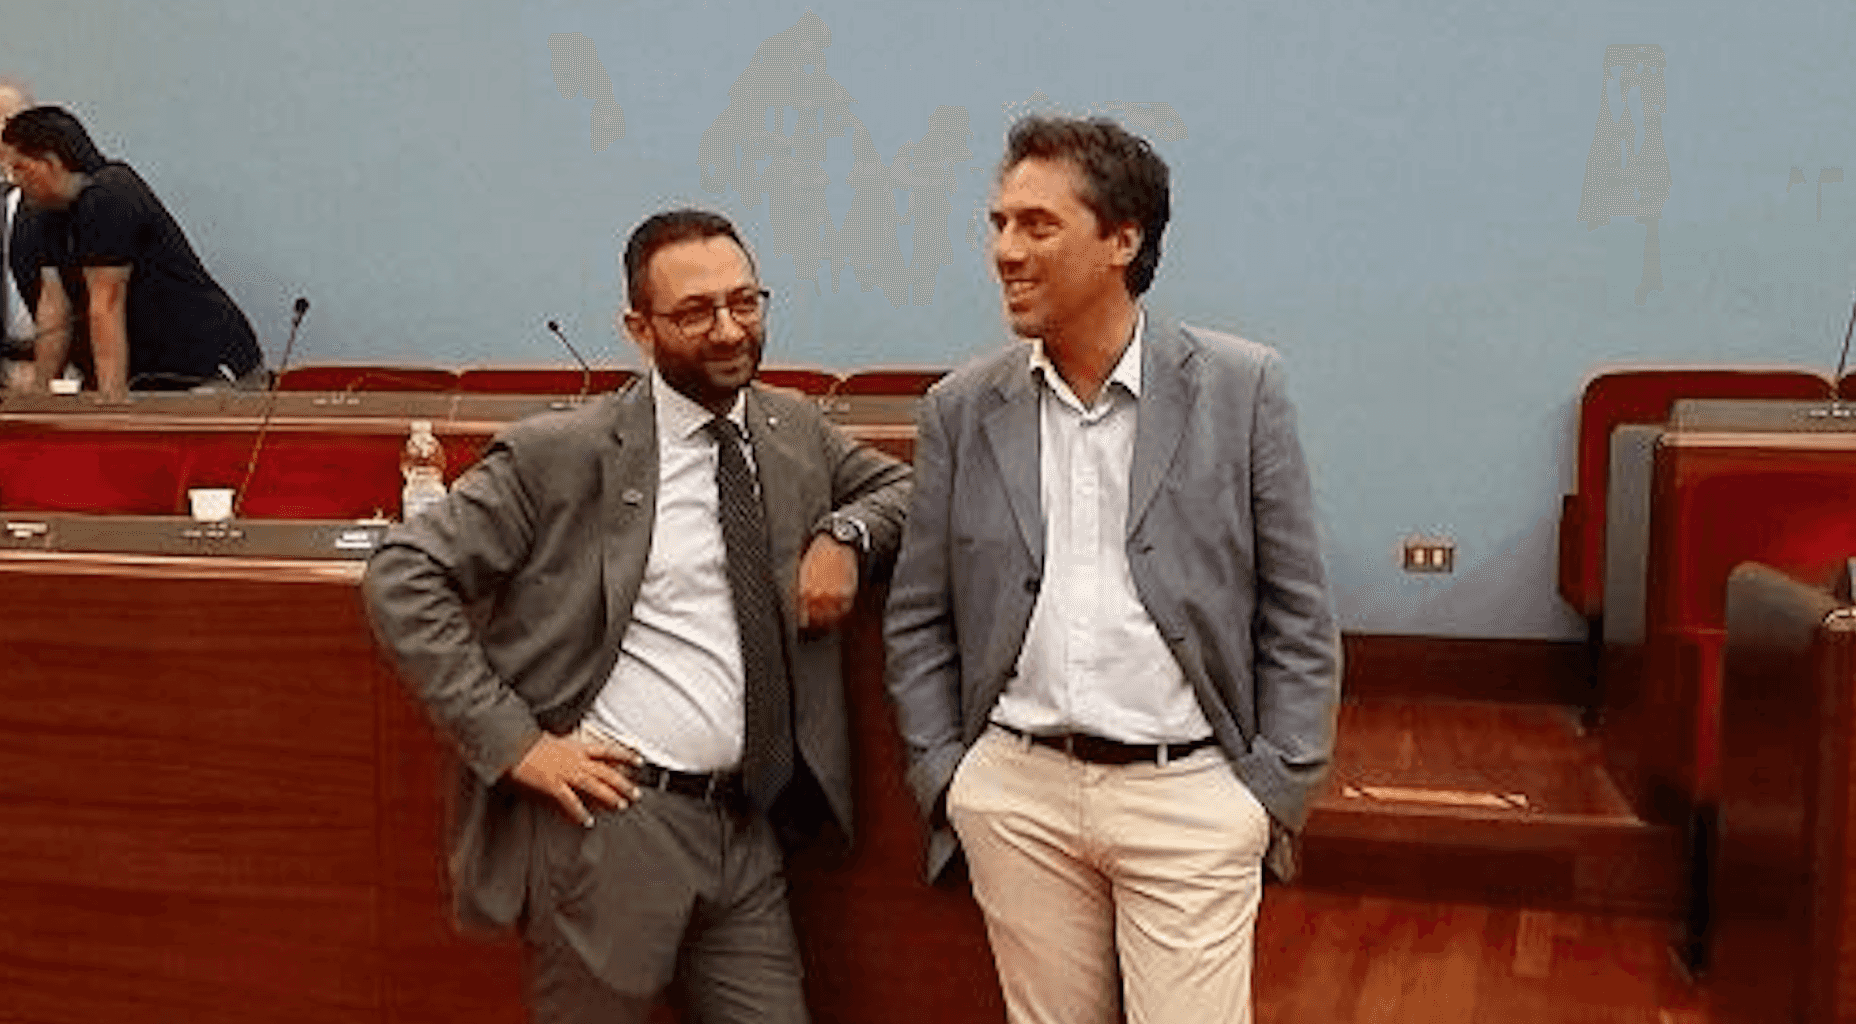 Gianmichele Bosco e Nicola Fiorita replicano a Longo